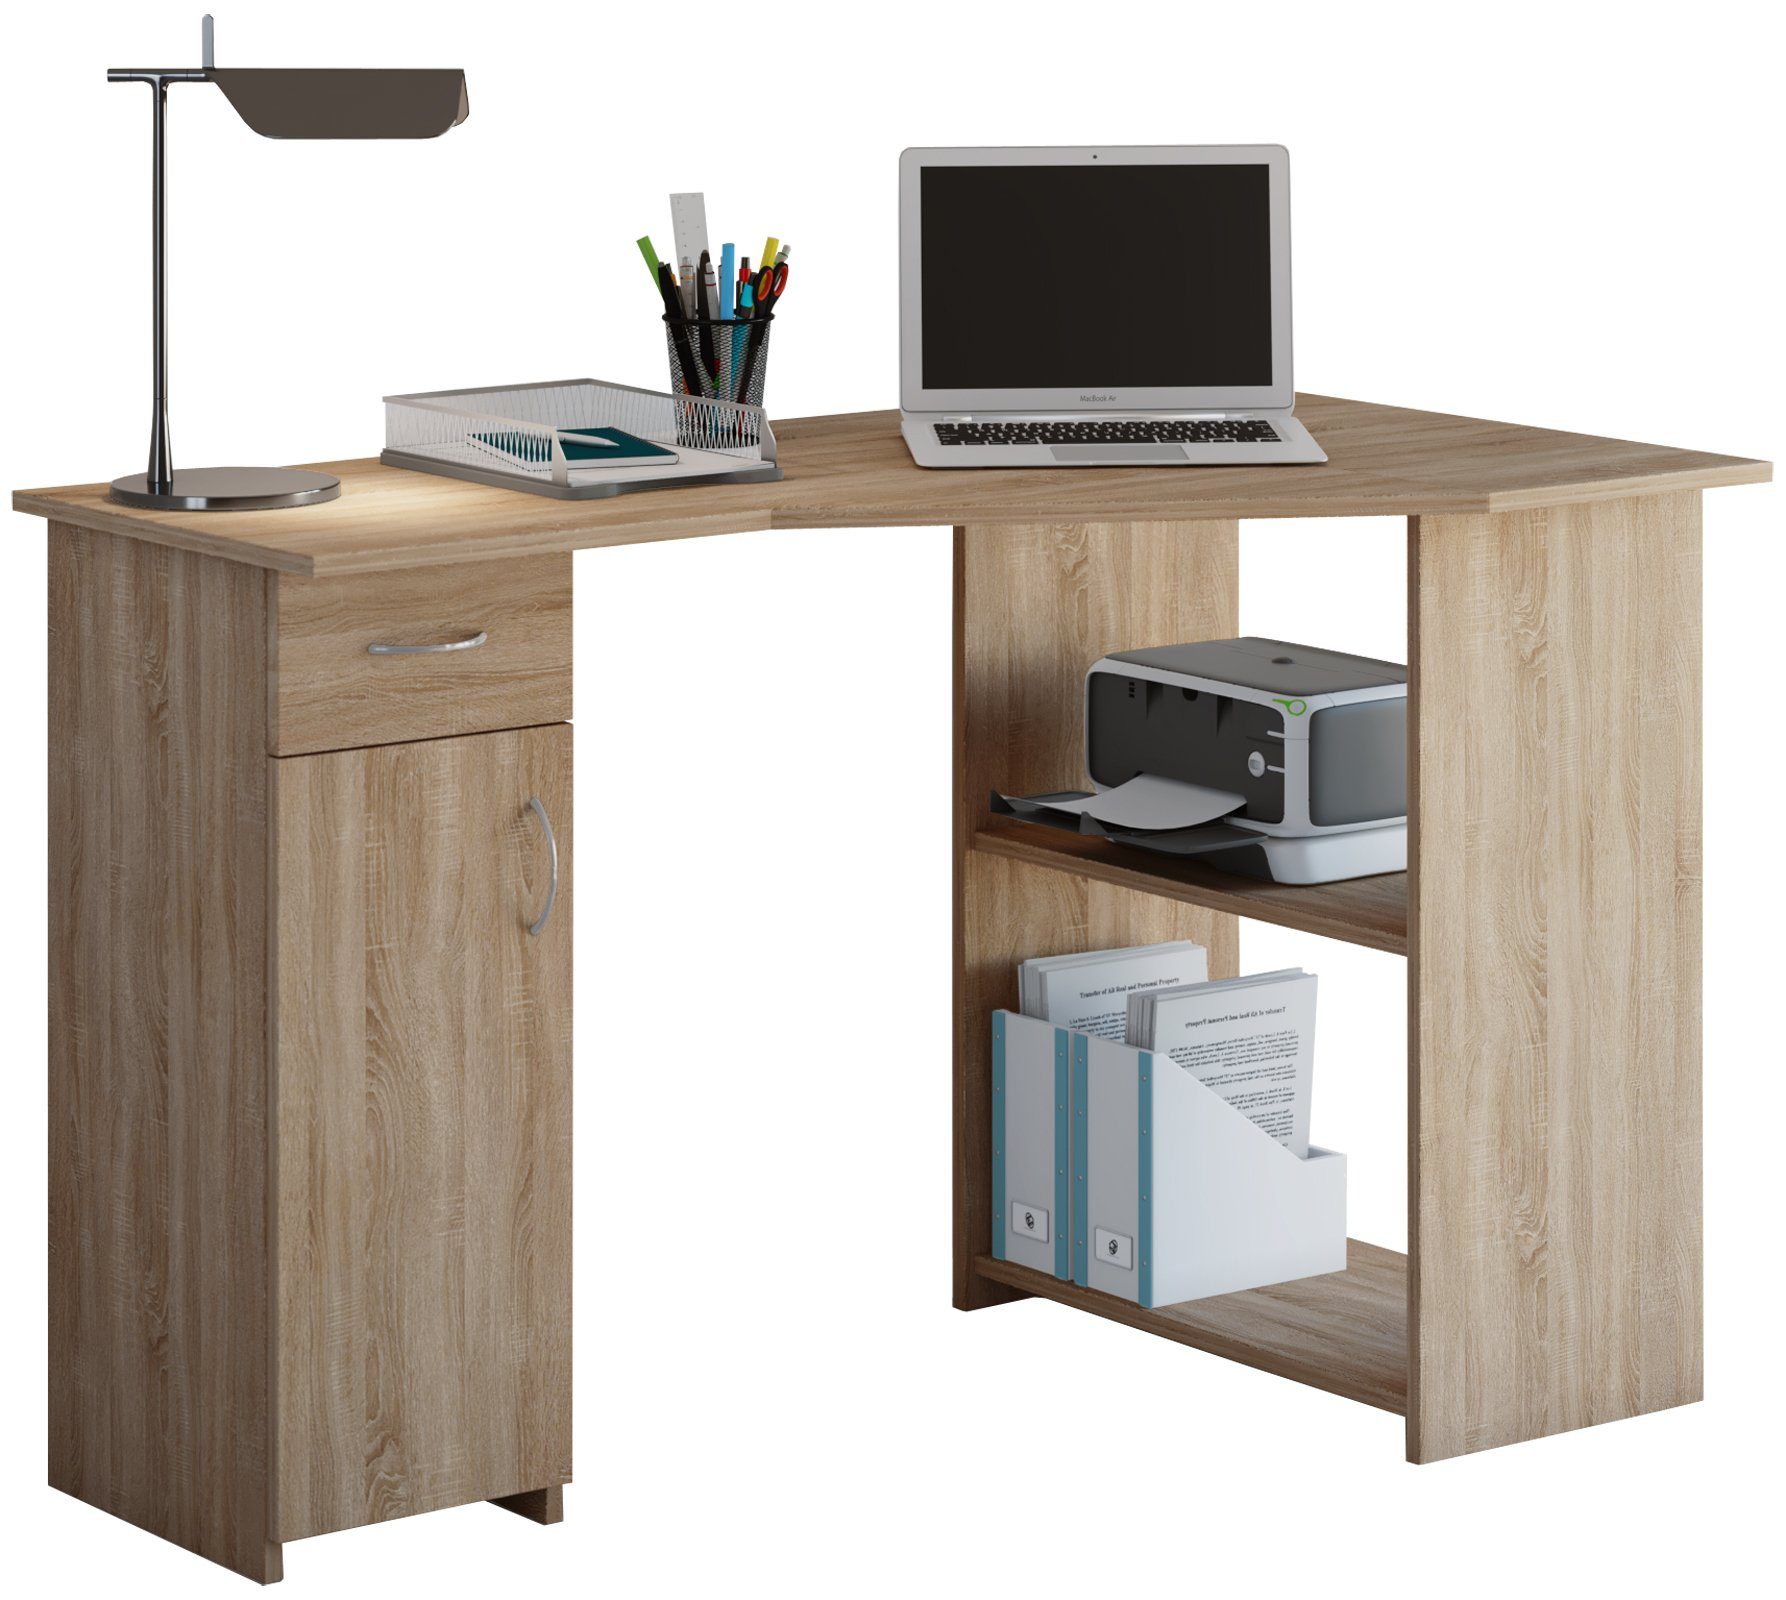 VCM Sonoma-Eiche Bürotisch Linzia Schreibtisch Eckschreibtisch (Sägerau) Schreibtisch Holz